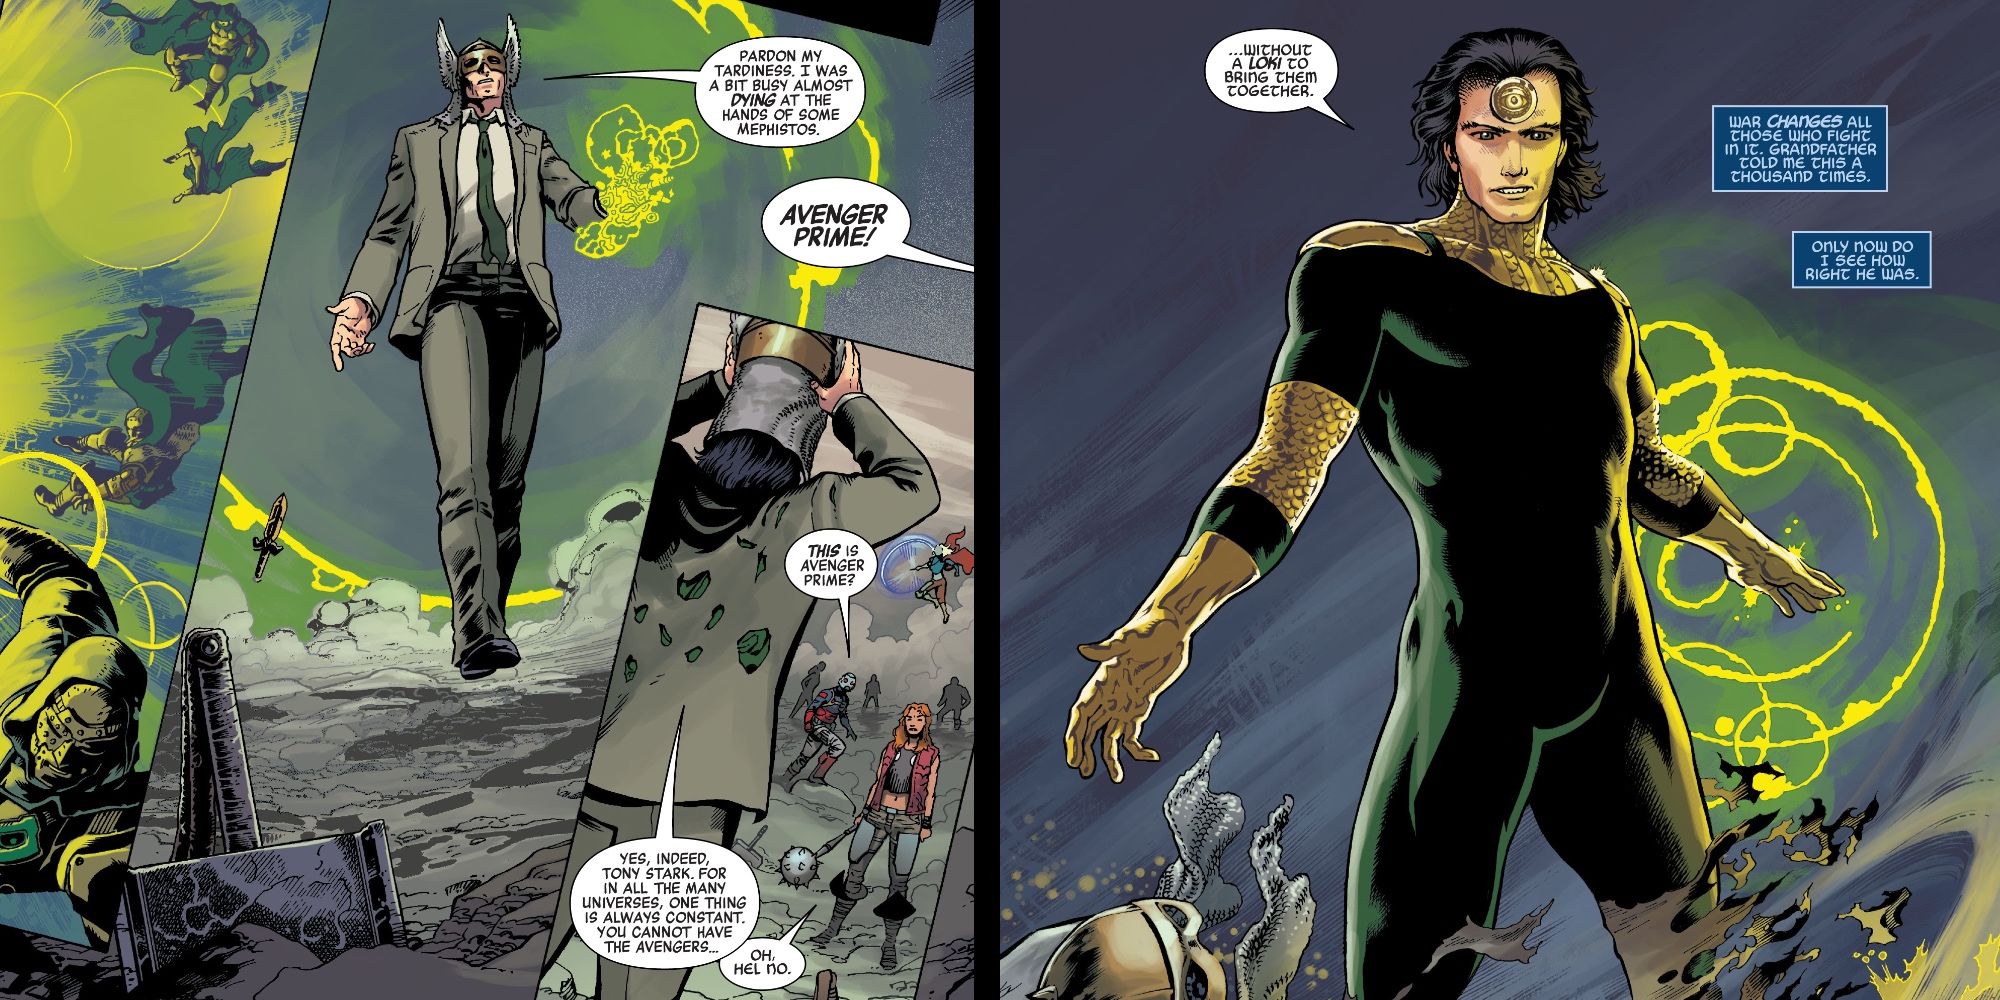 Avenger Prime revelou ser Loki em Avengers Forever # 13